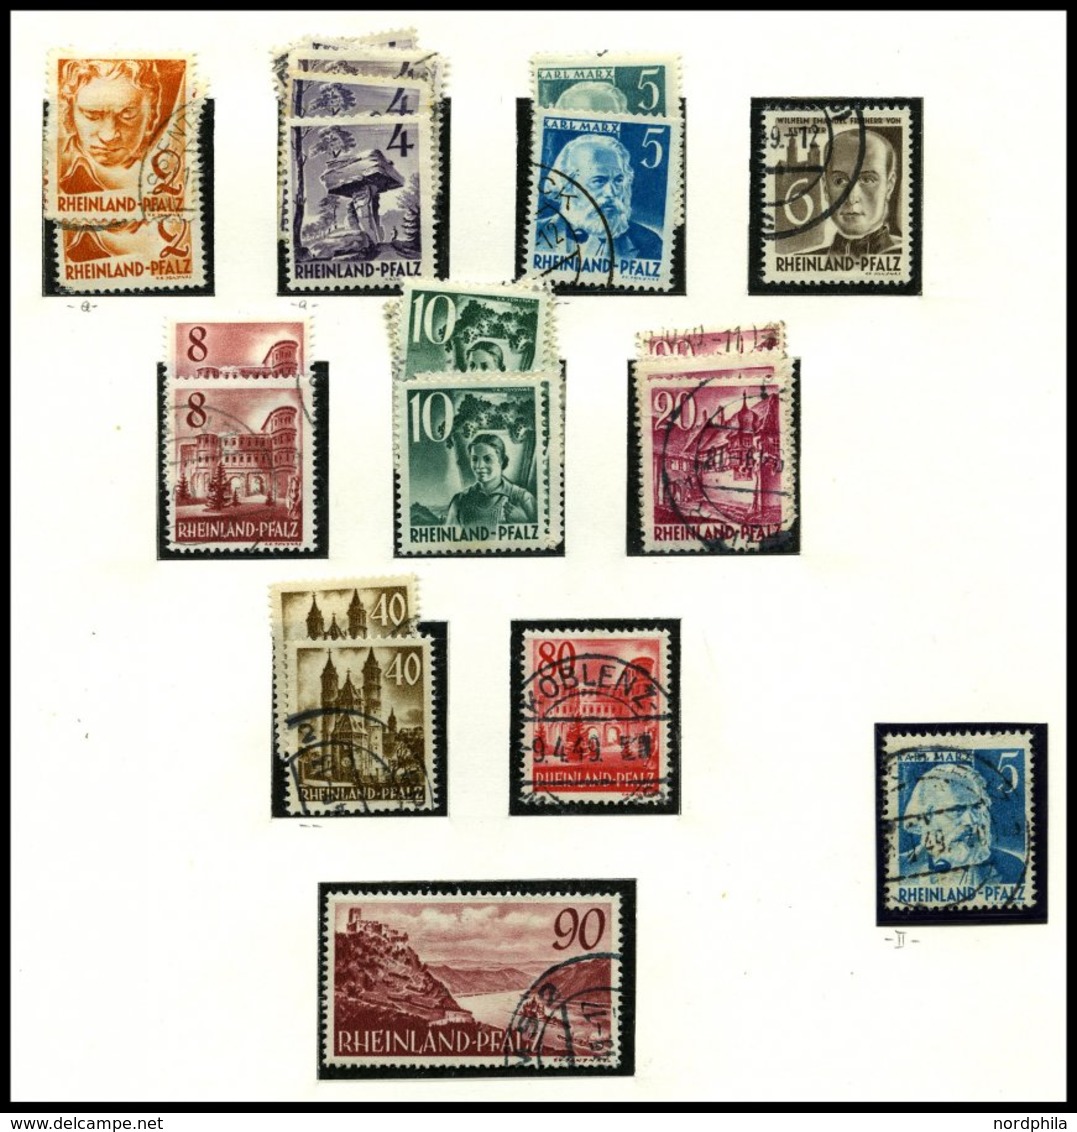 SAMMLUNGEN, LOTS *,**,o,Brief , umfangreiche Sammlung Französische Zone von 1945-49 im SAFE Album mit verschiedenen Papi